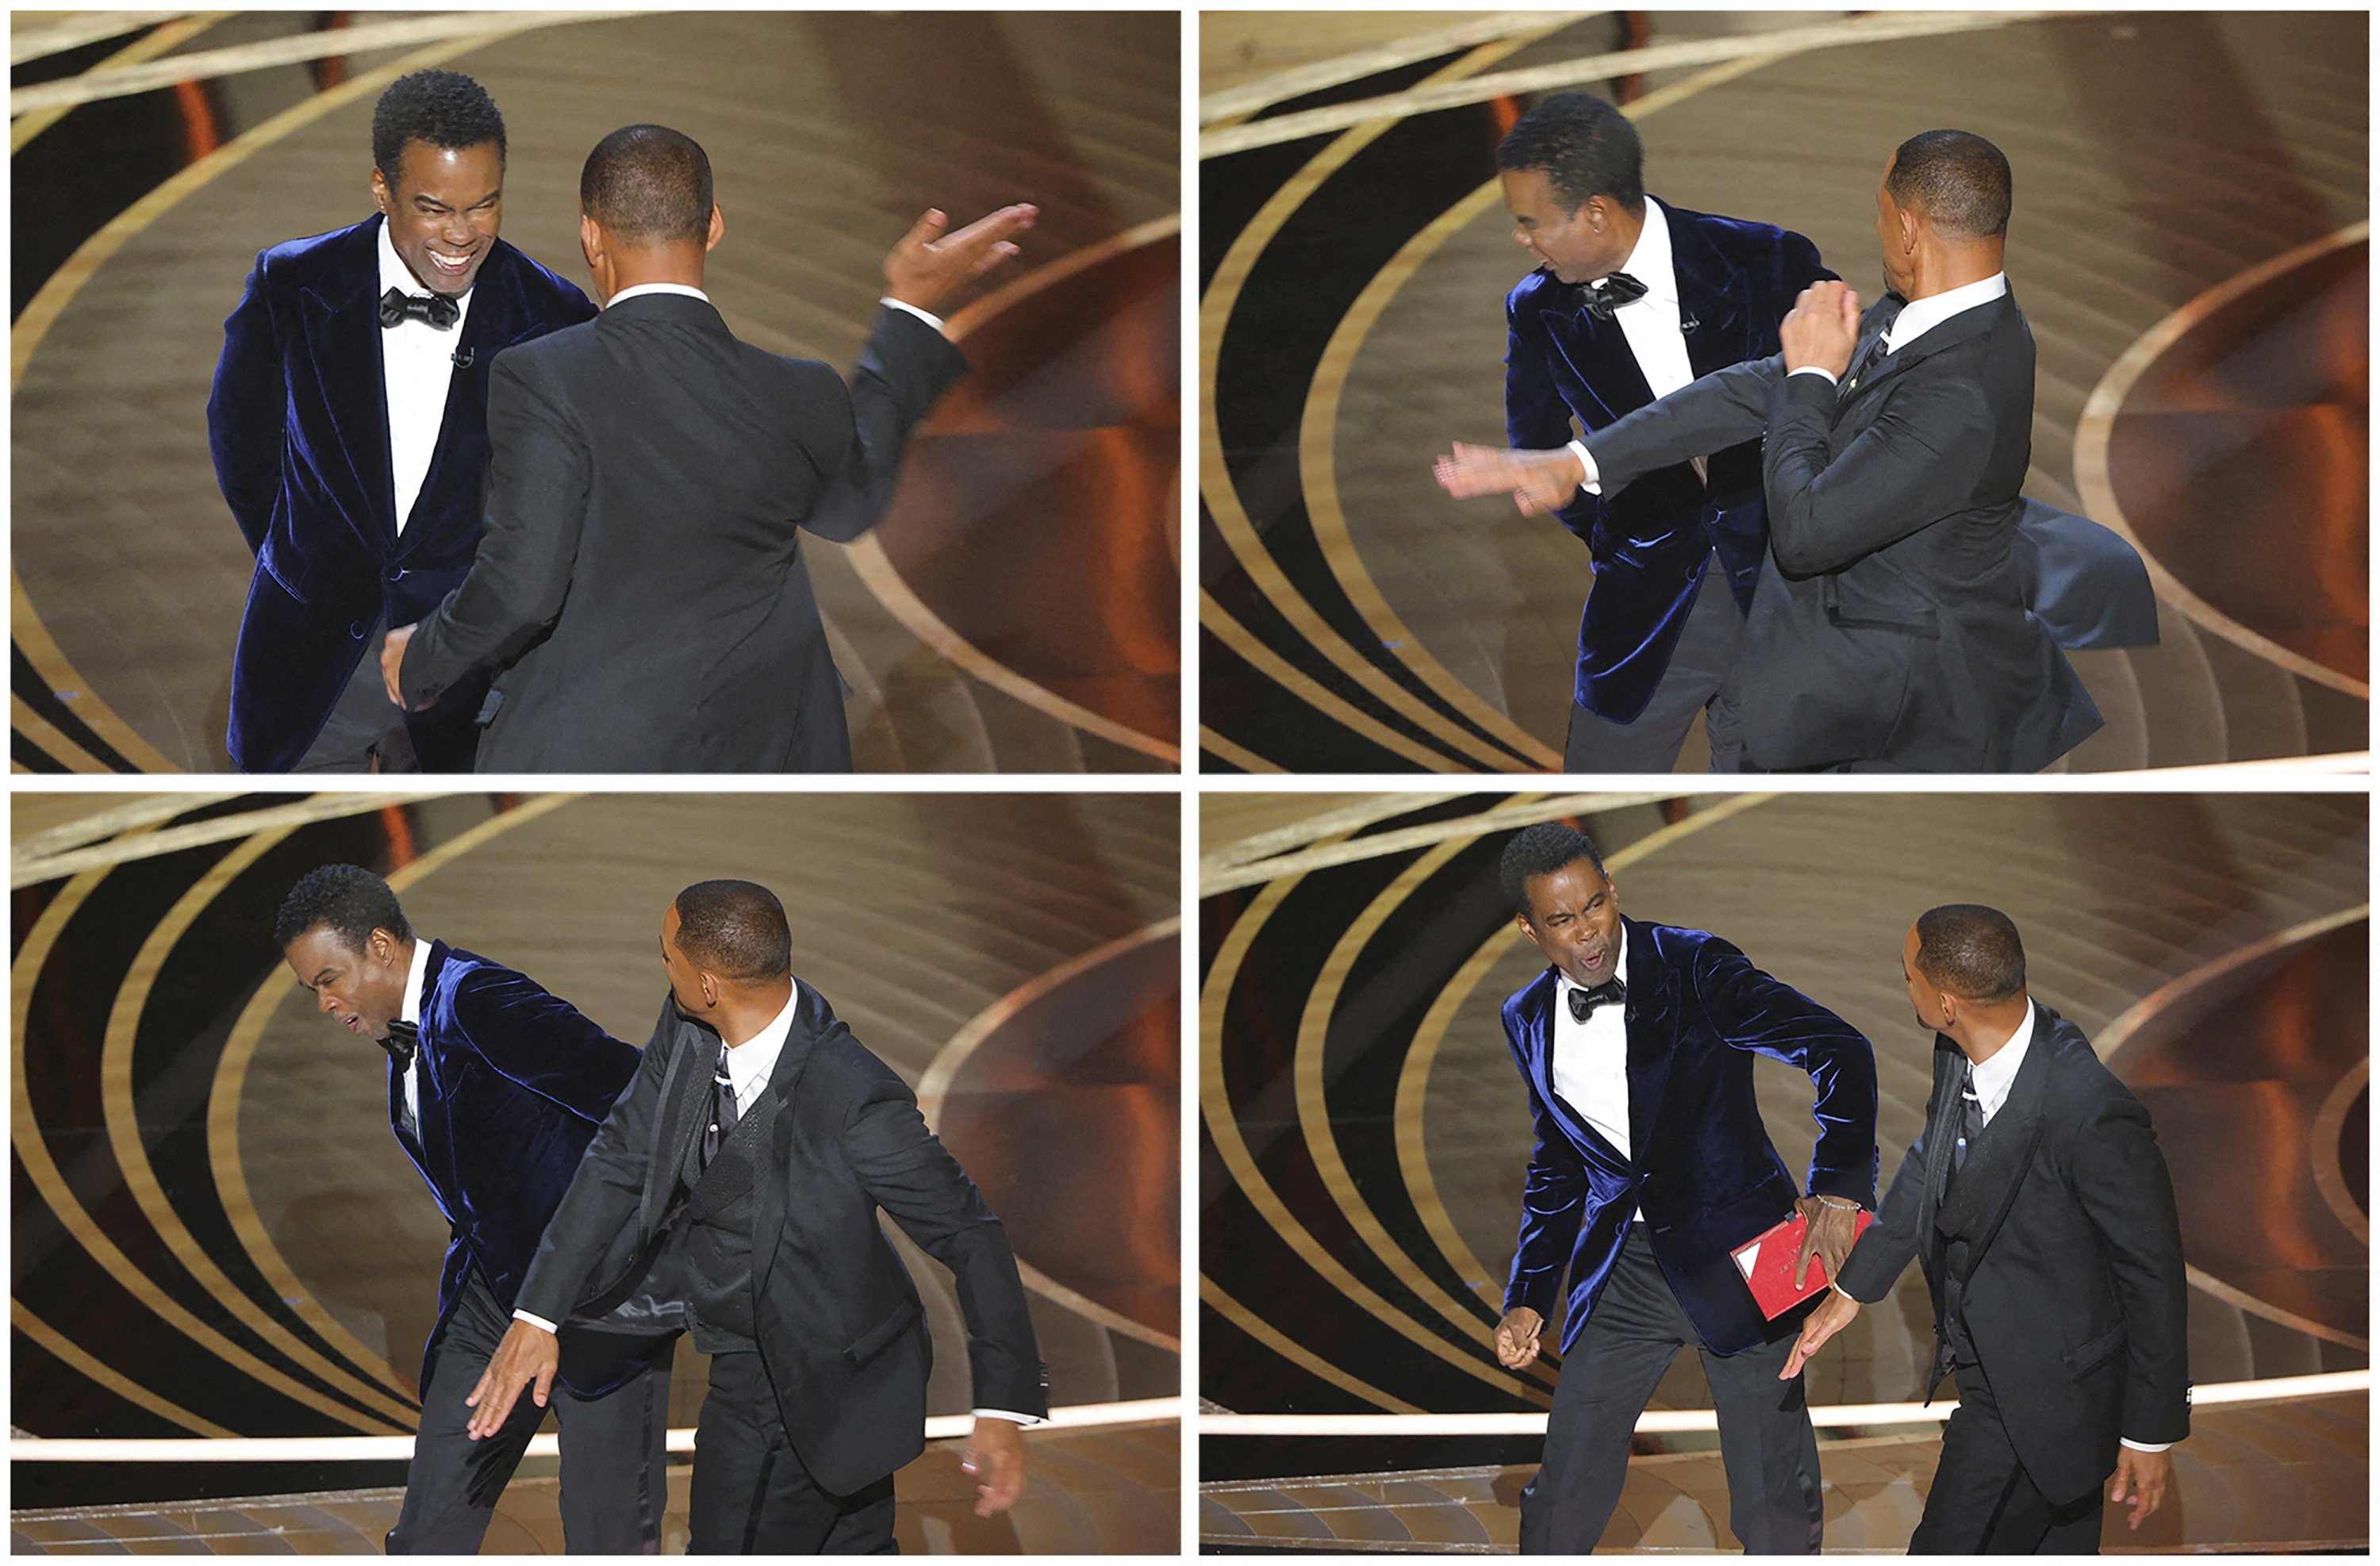 Gambar kombinasi menunjukkan Will Smith menampar Chris Rock saat Rock berbicara di atas panggung selama Academy Awards ke-94 di Hollywood, Los Angeles, California, AS, 27 Maret 2022. (REUTERS)